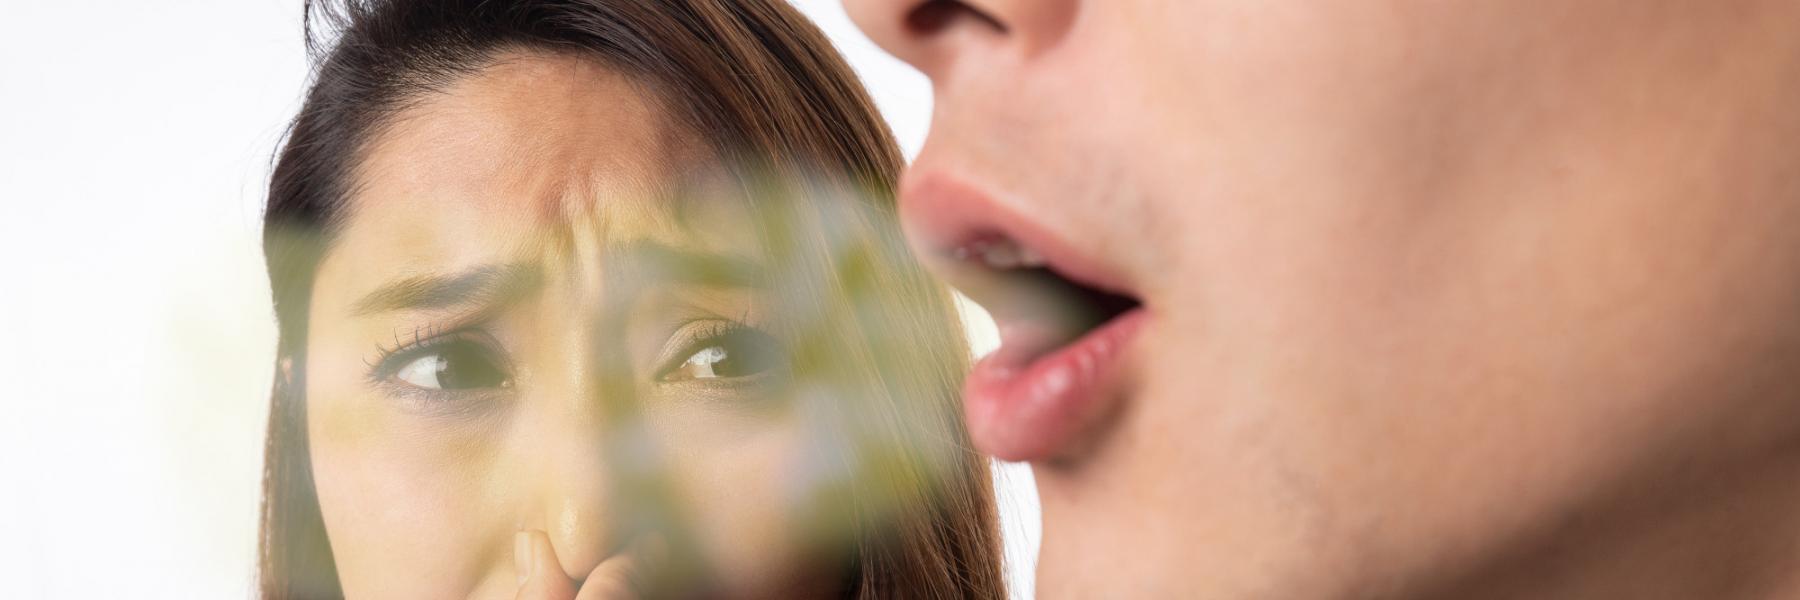 7 نصائح للتخلص من رائحة الفم الكريهة بعد تناول الثوم والبصل